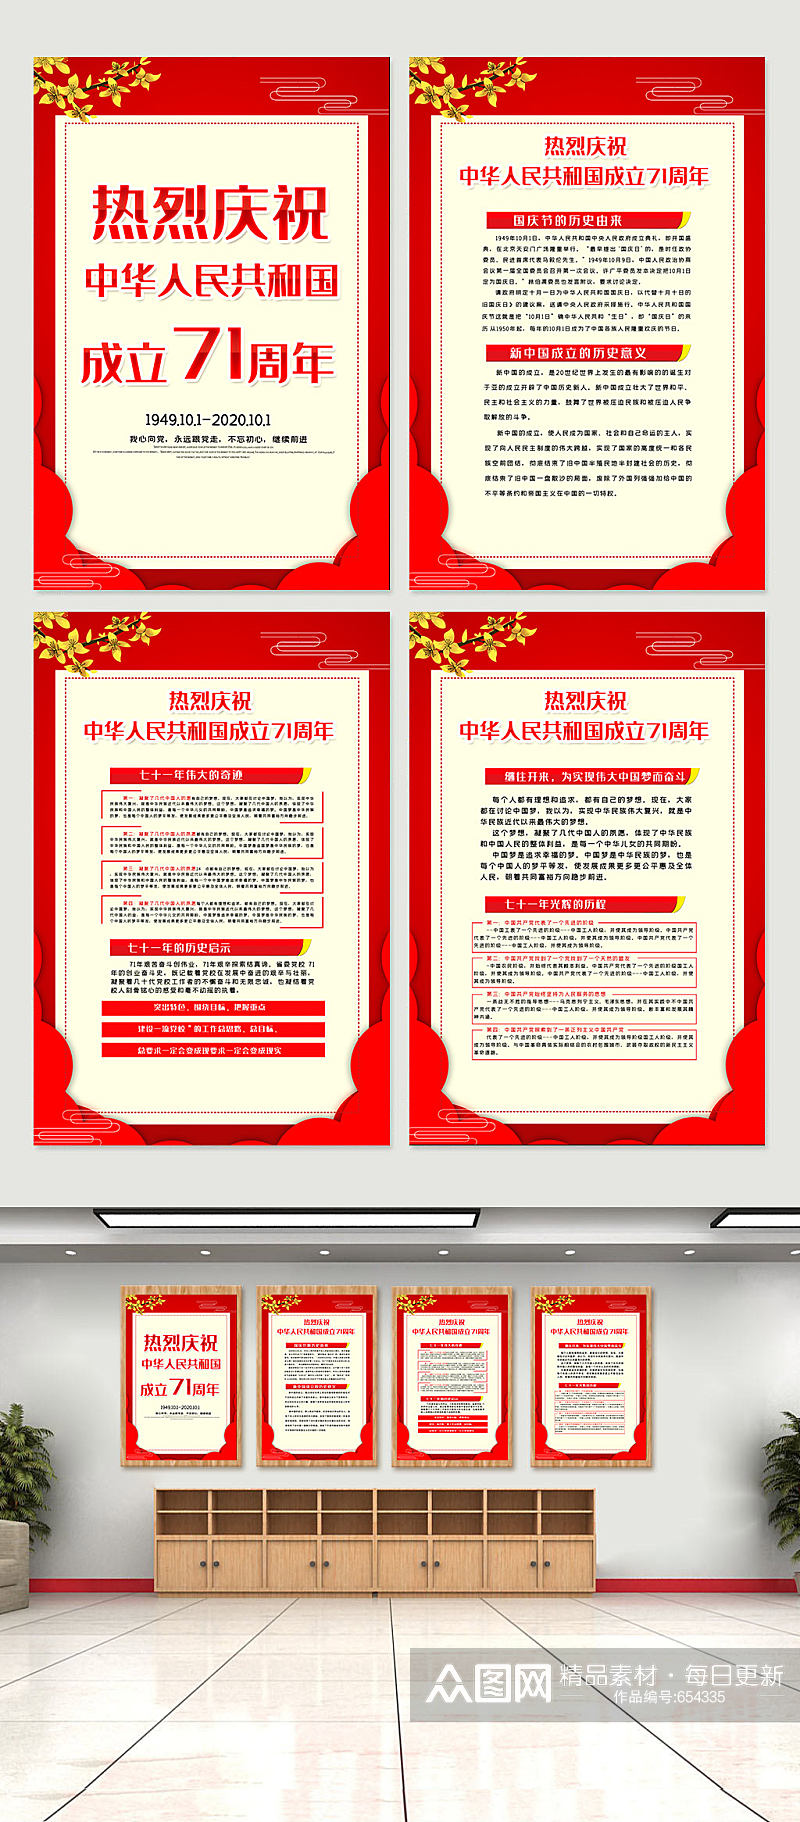 大气红色国庆节内容宣传挂画展板素材素材